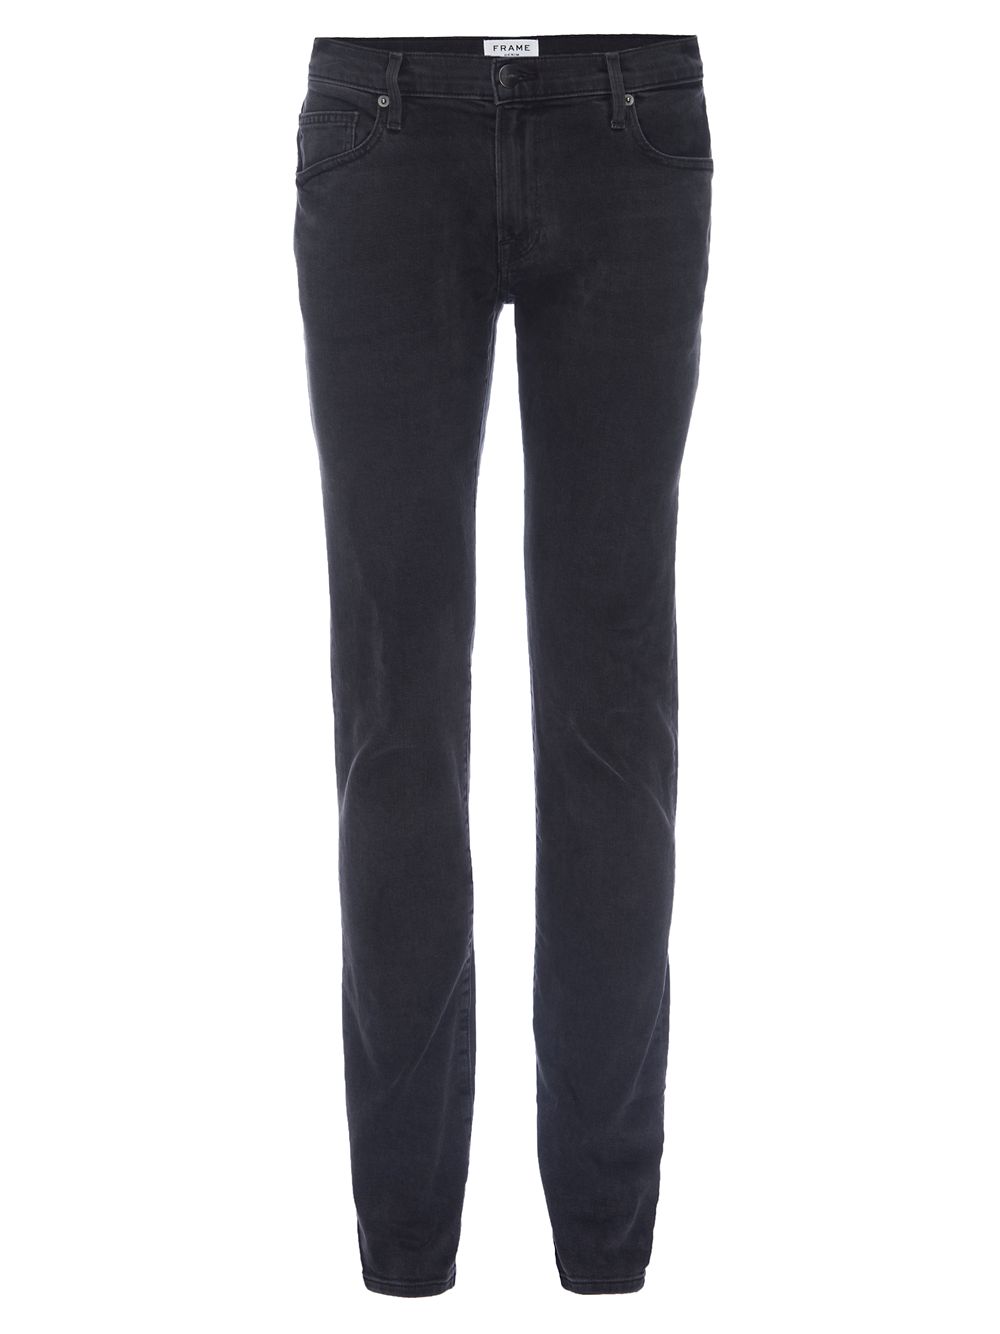 Узкие джинсы Core L'Homme Frame, серый